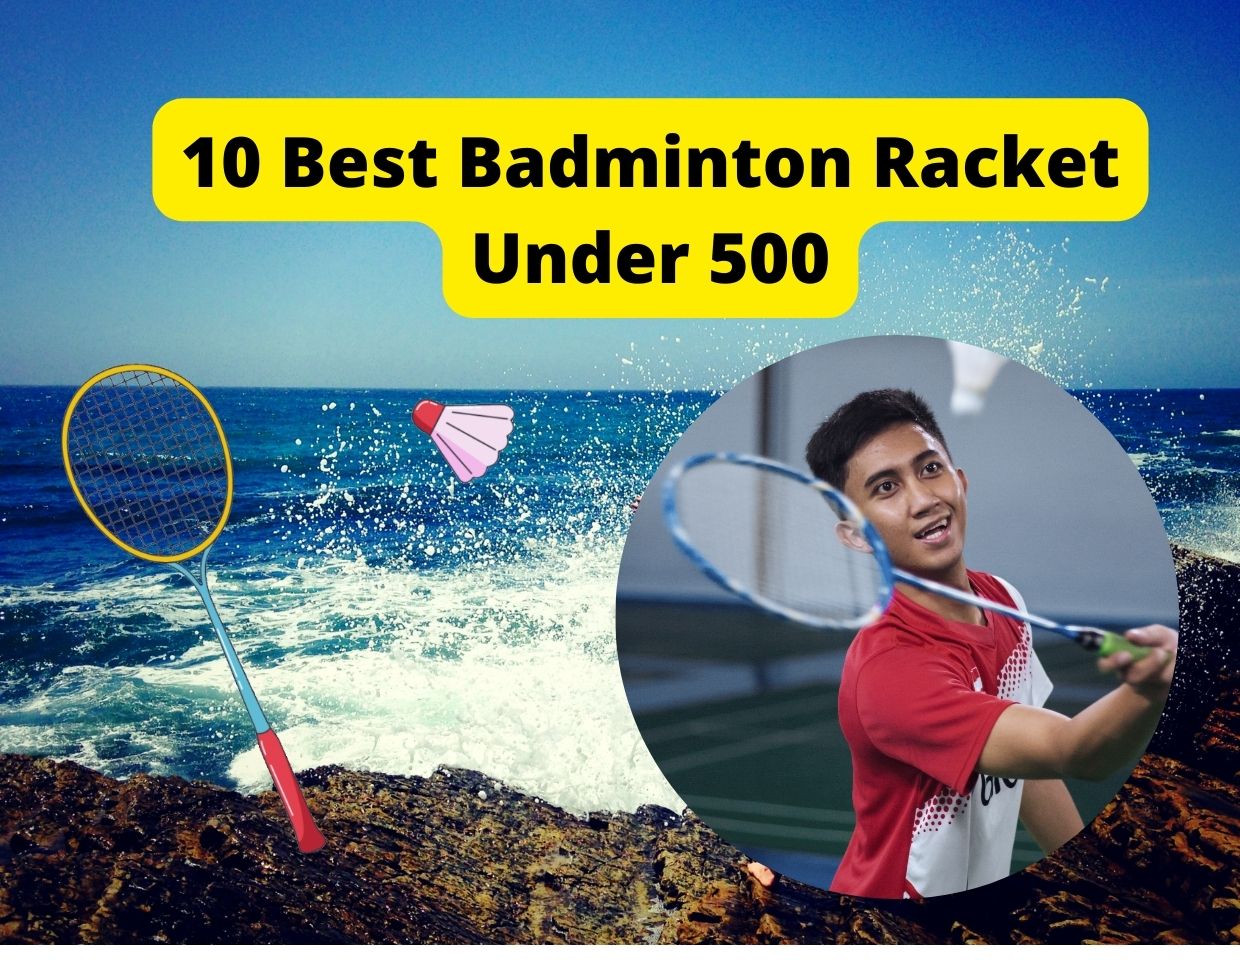 Best Badminton Racket Under 500